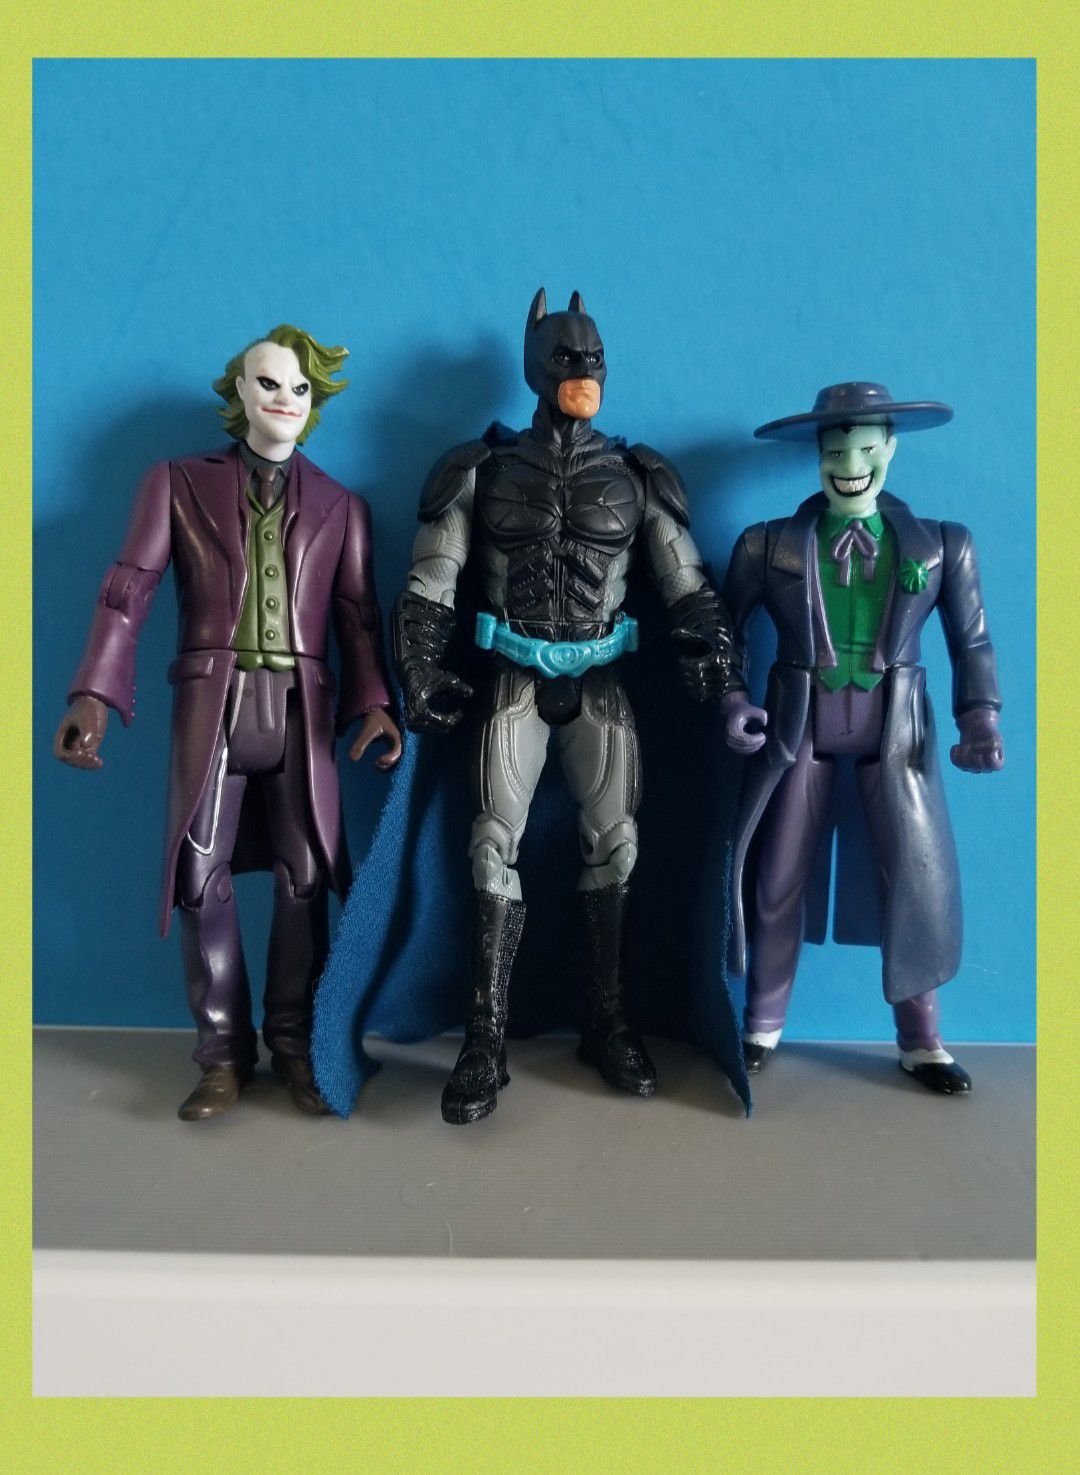 Batman and Jokers Action Figures.